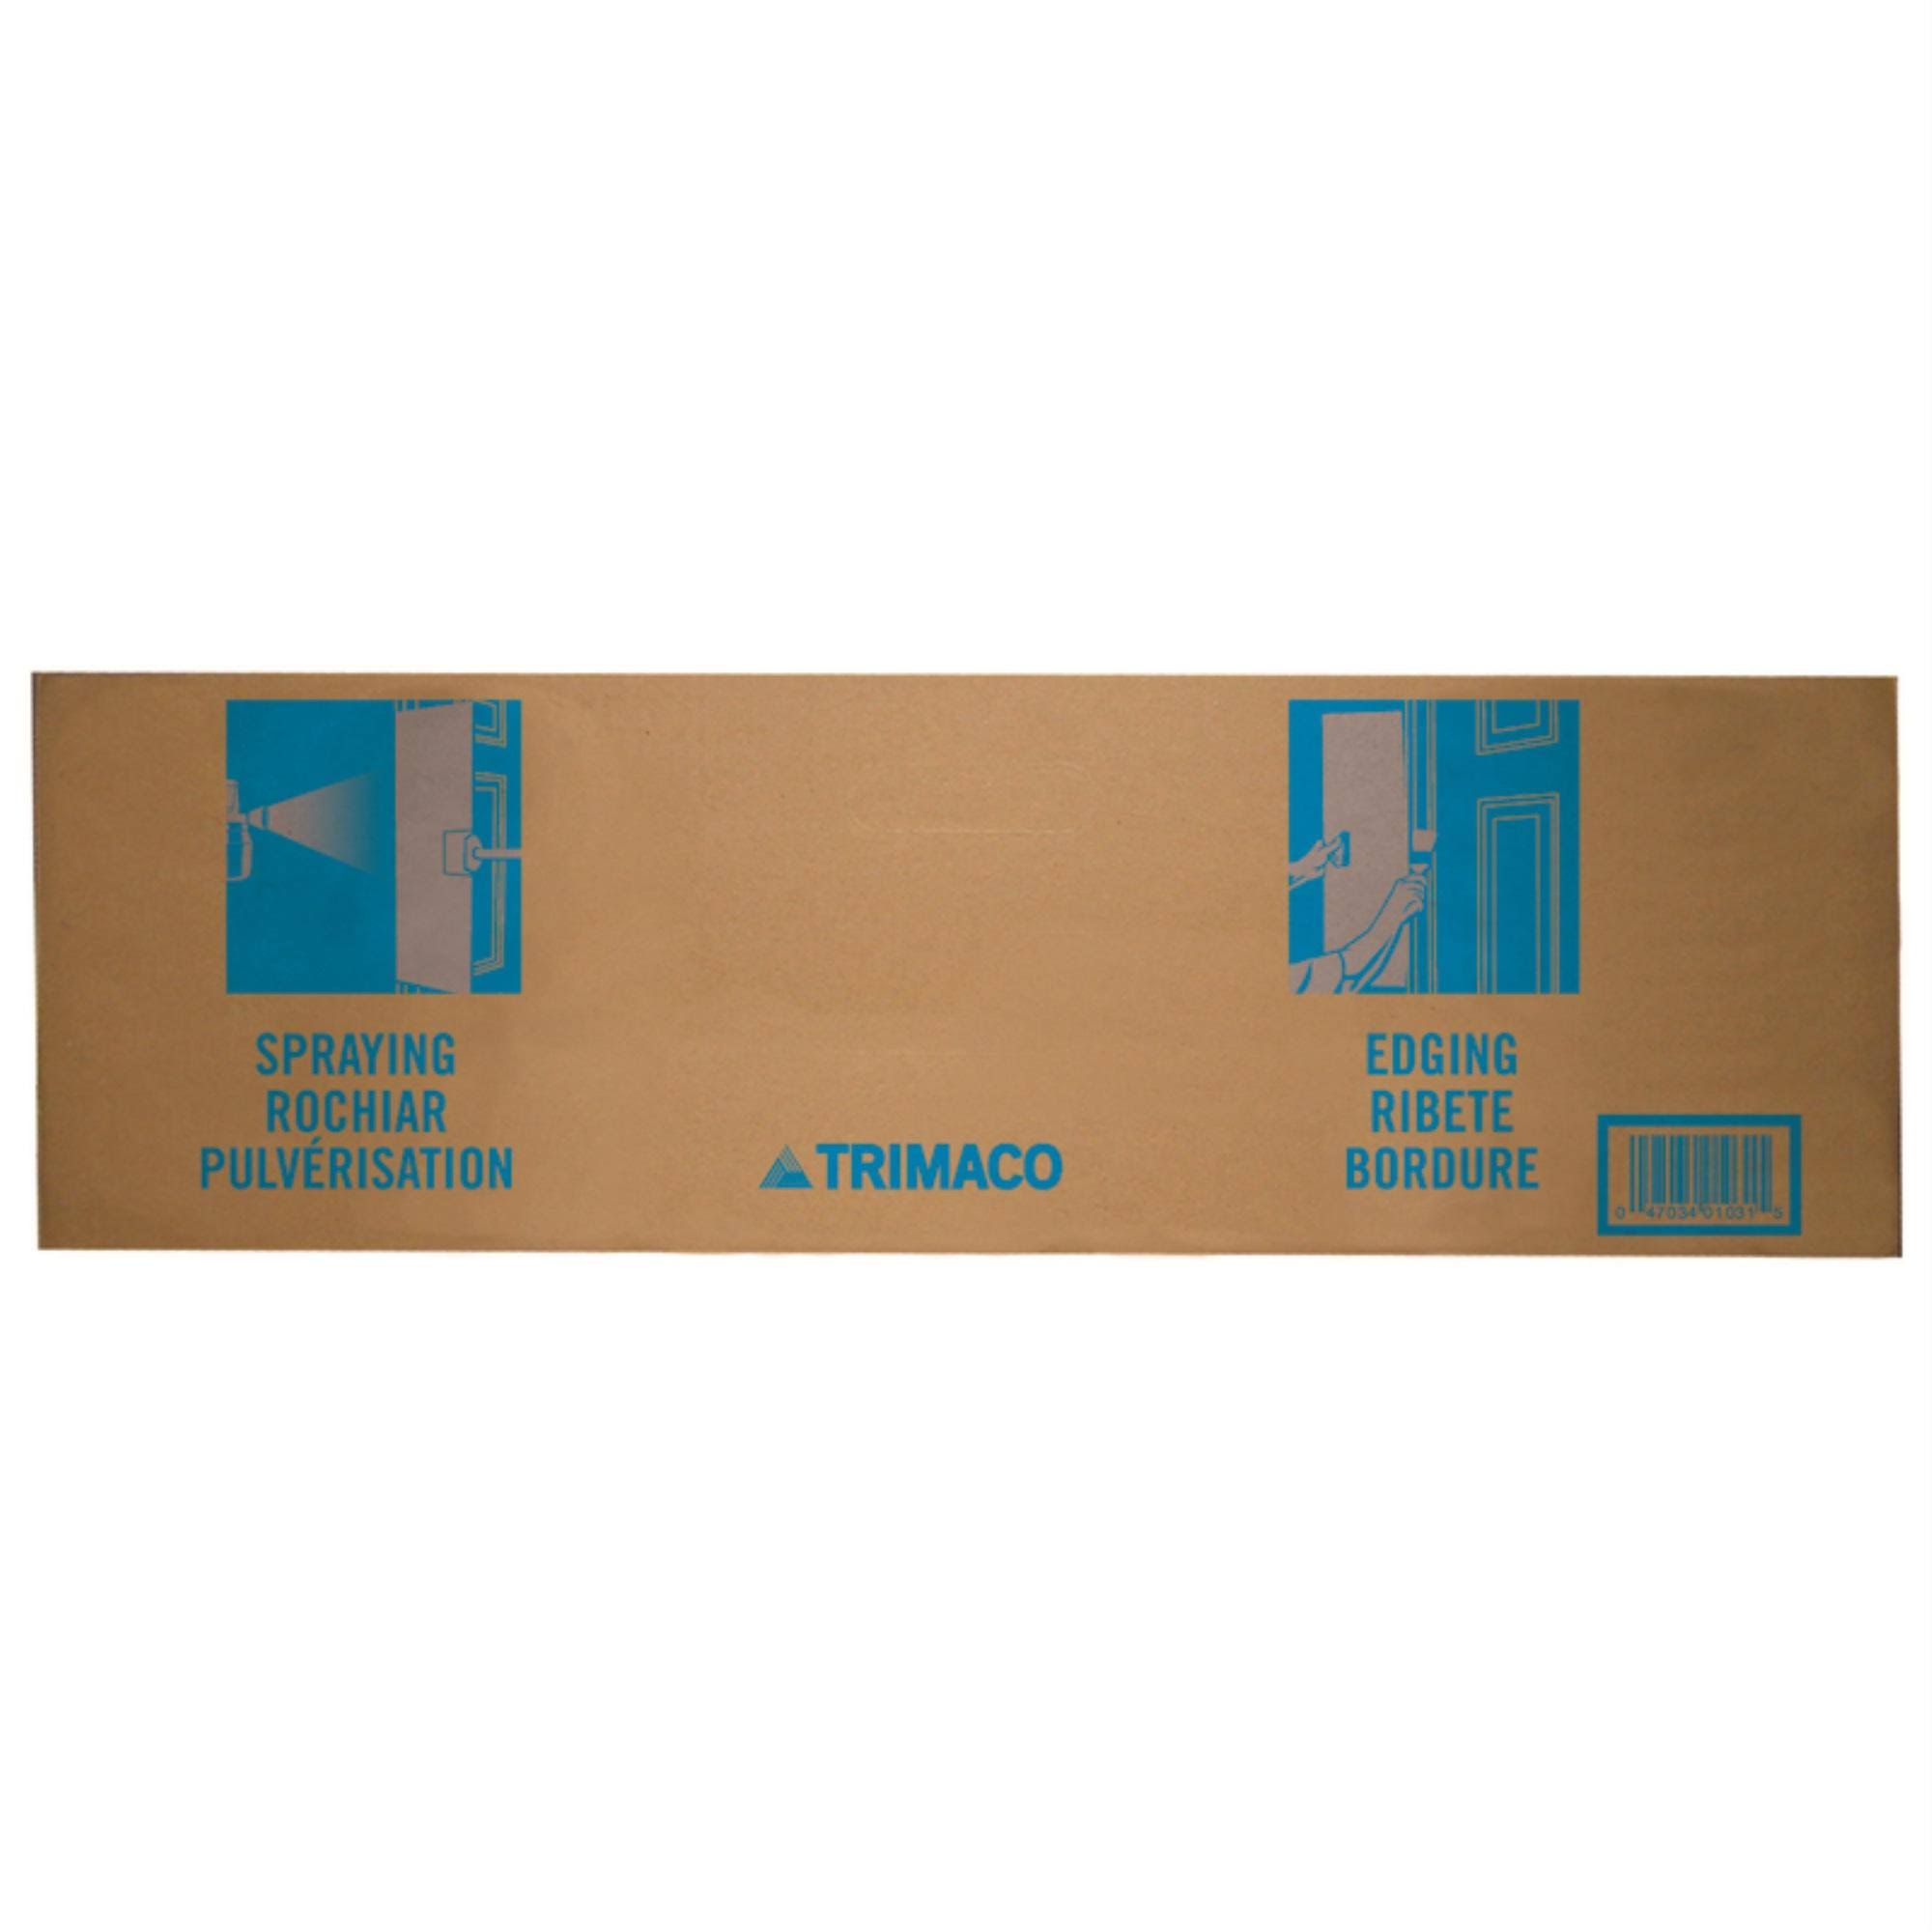 Trimaco Llc Cardboard Spray Shield - 50ct, 36"